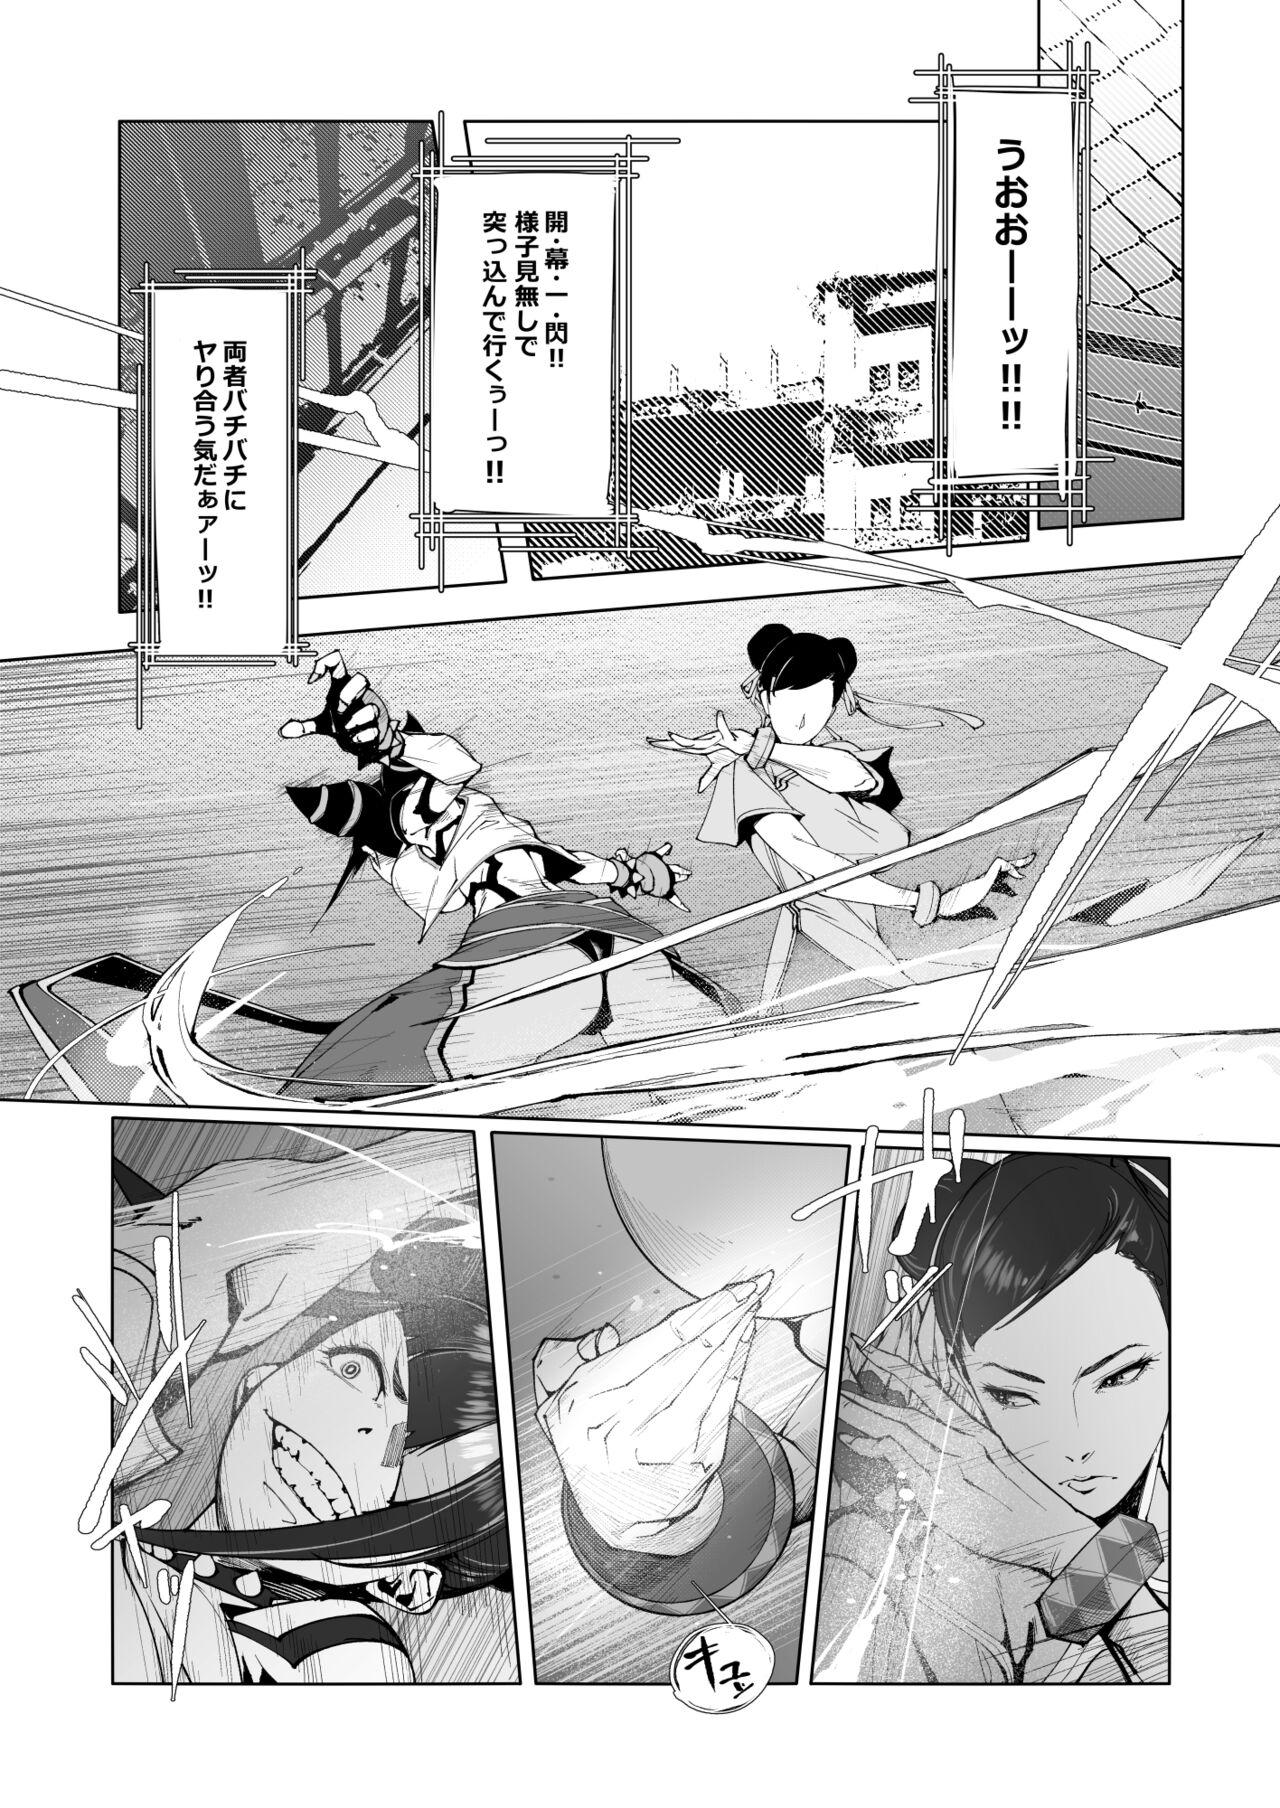 Japan Backstab - Street fighter Ejaculation - Page 3